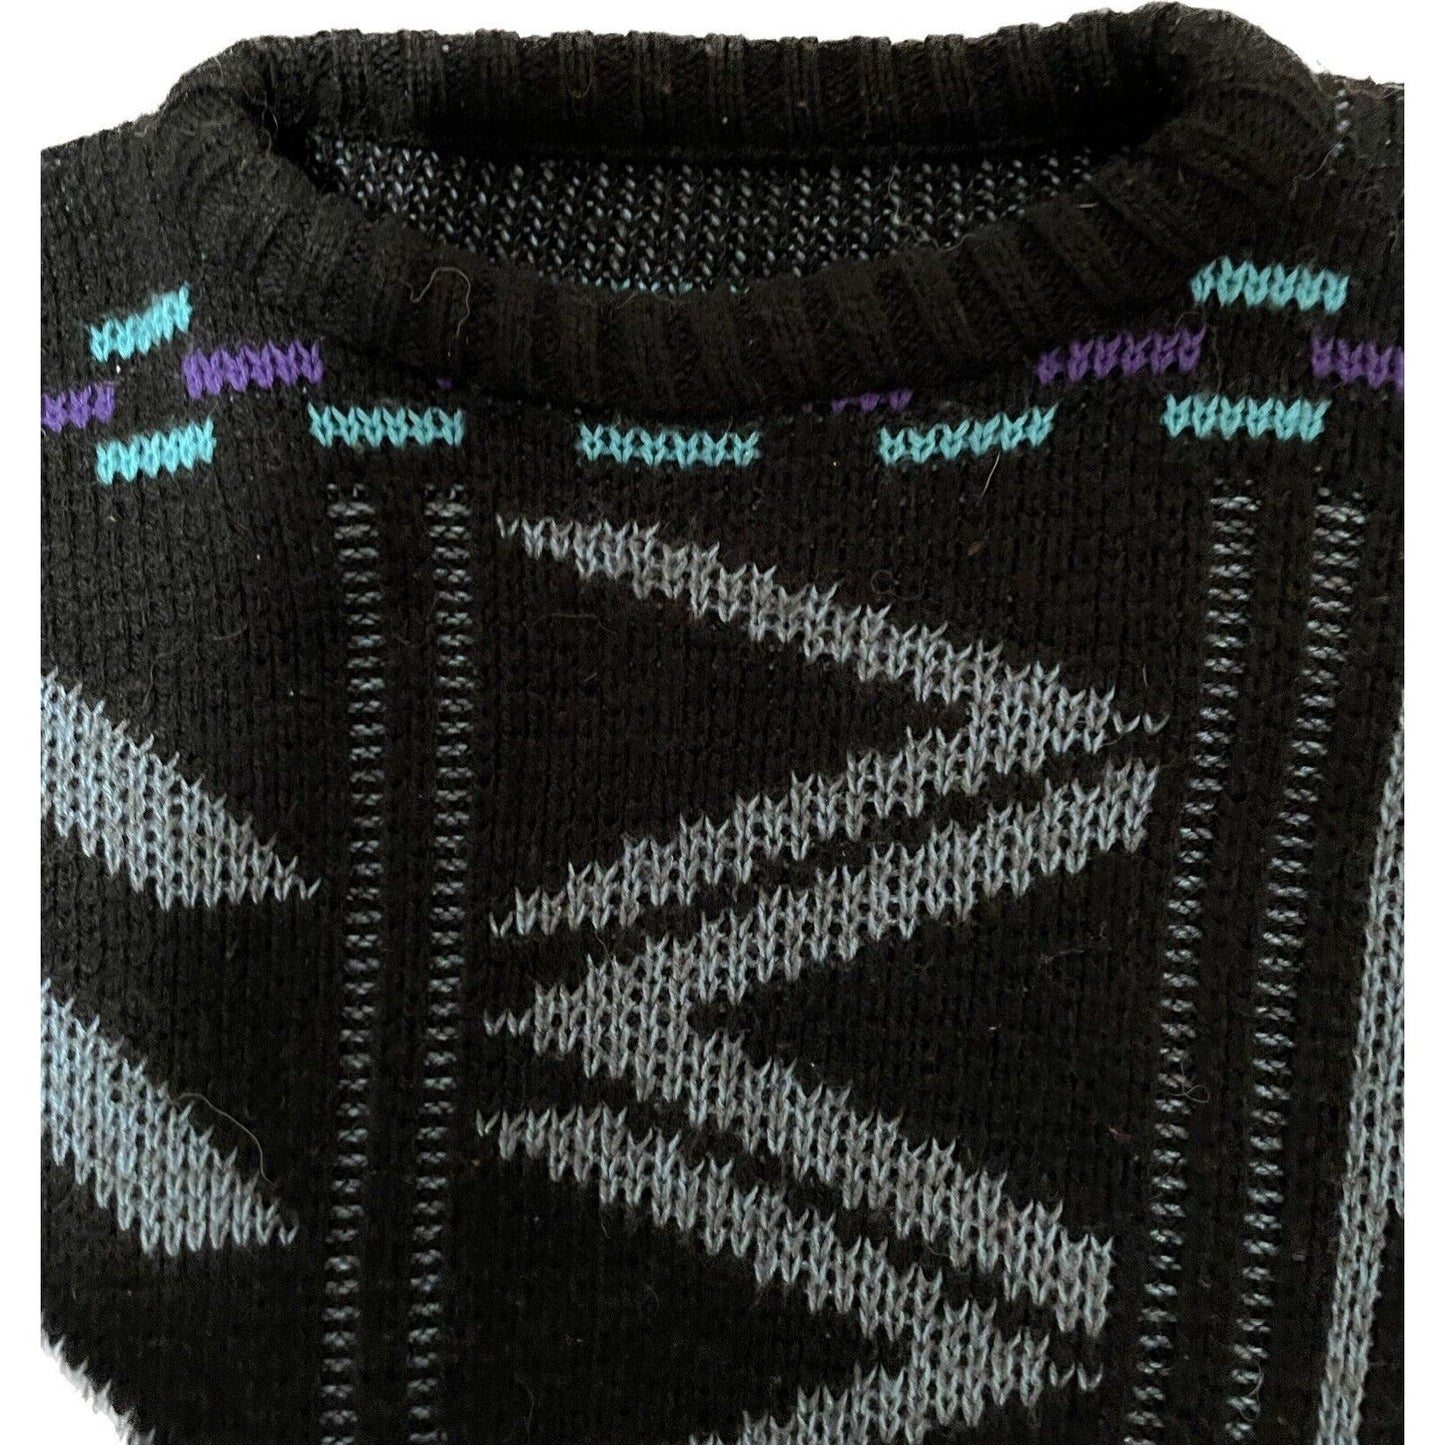 Vintage 1980’s Geometric Adult Medium Knit Pullover Sweater Teal Black Purple